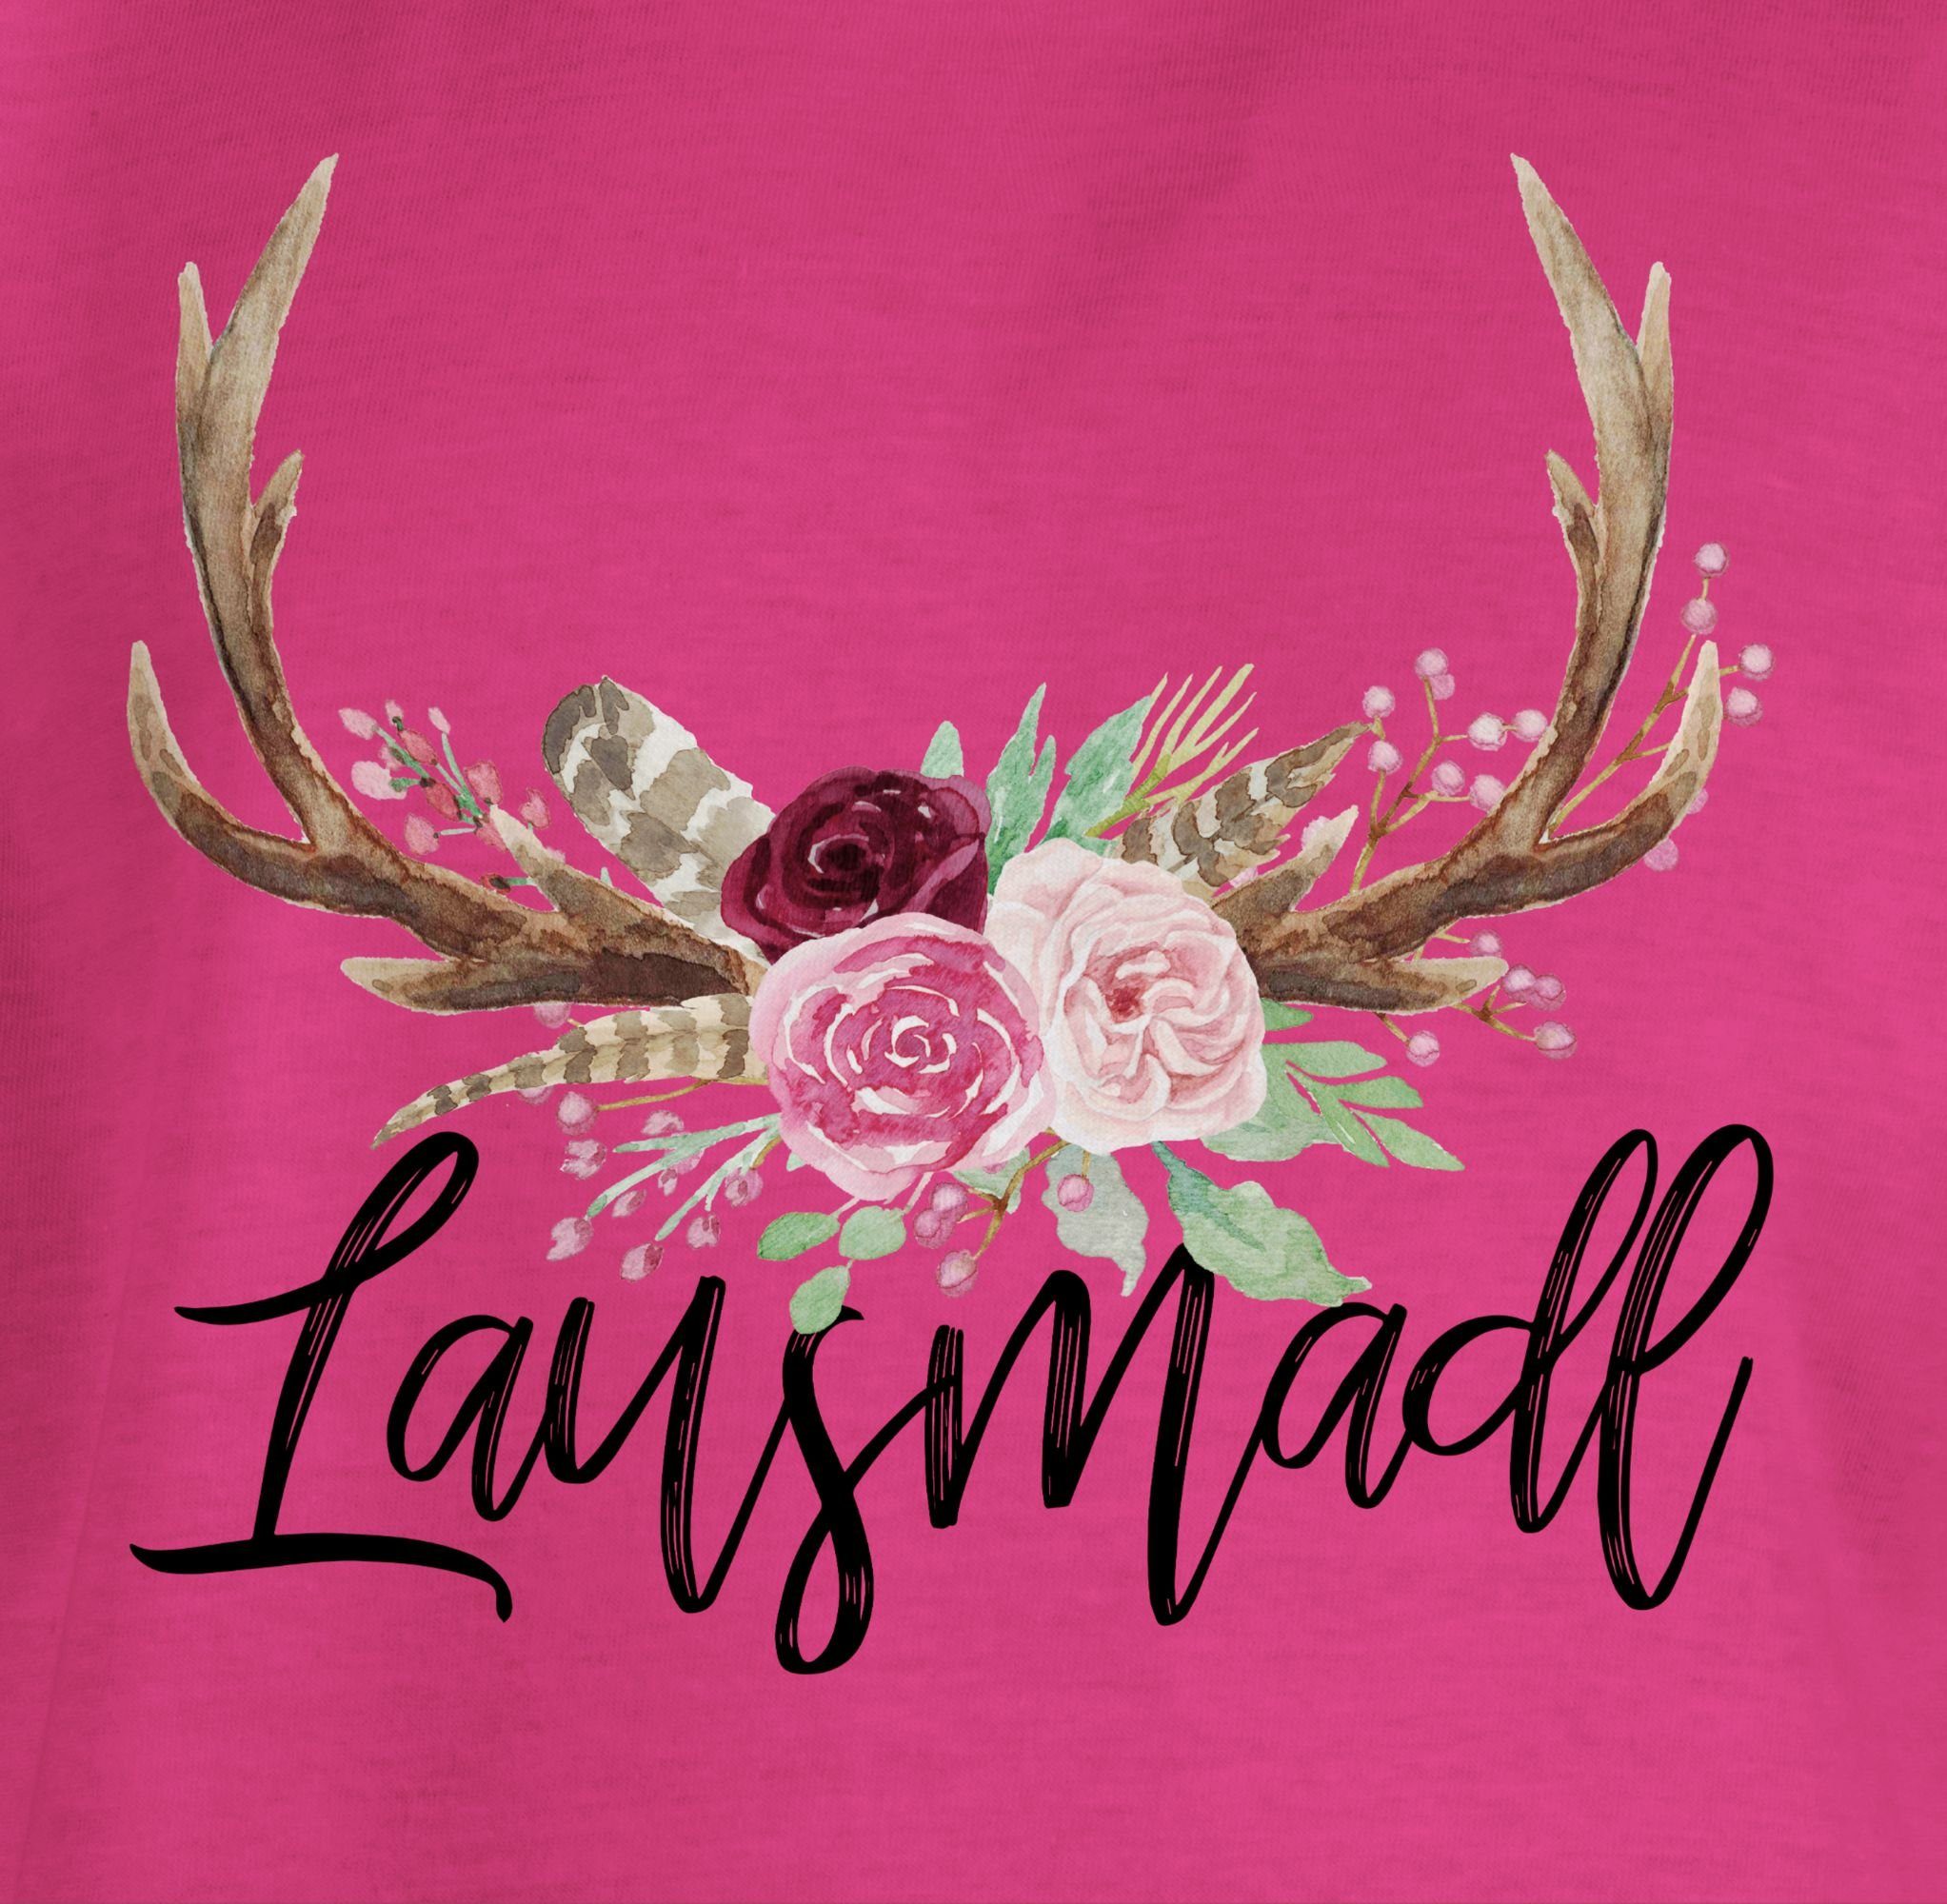 Fuchsia Outfit Lausmadl Mode Shirtracer 2 Hirschgeweih T-Shirt Kinder für Oktoberfest